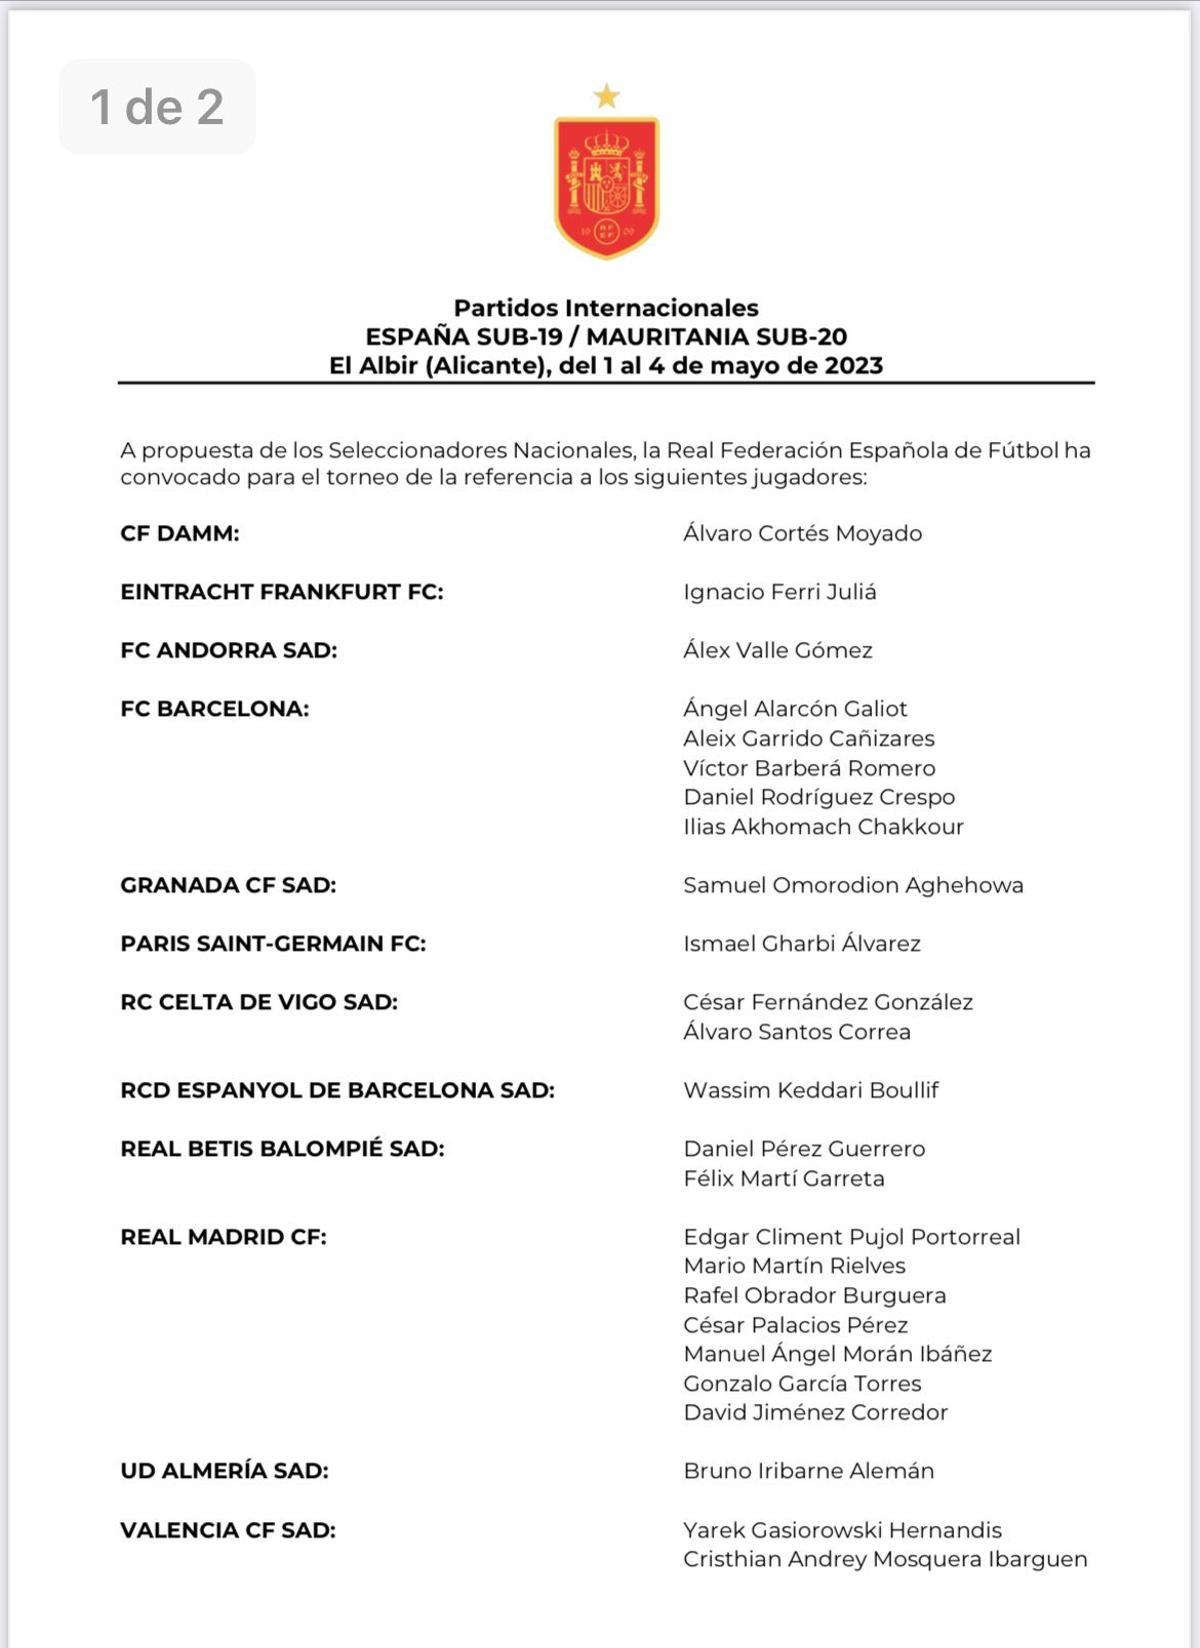 Esta es la lista de España sub-19 para los dos amistosos programados en Alicante contra Mauritania sub-20.